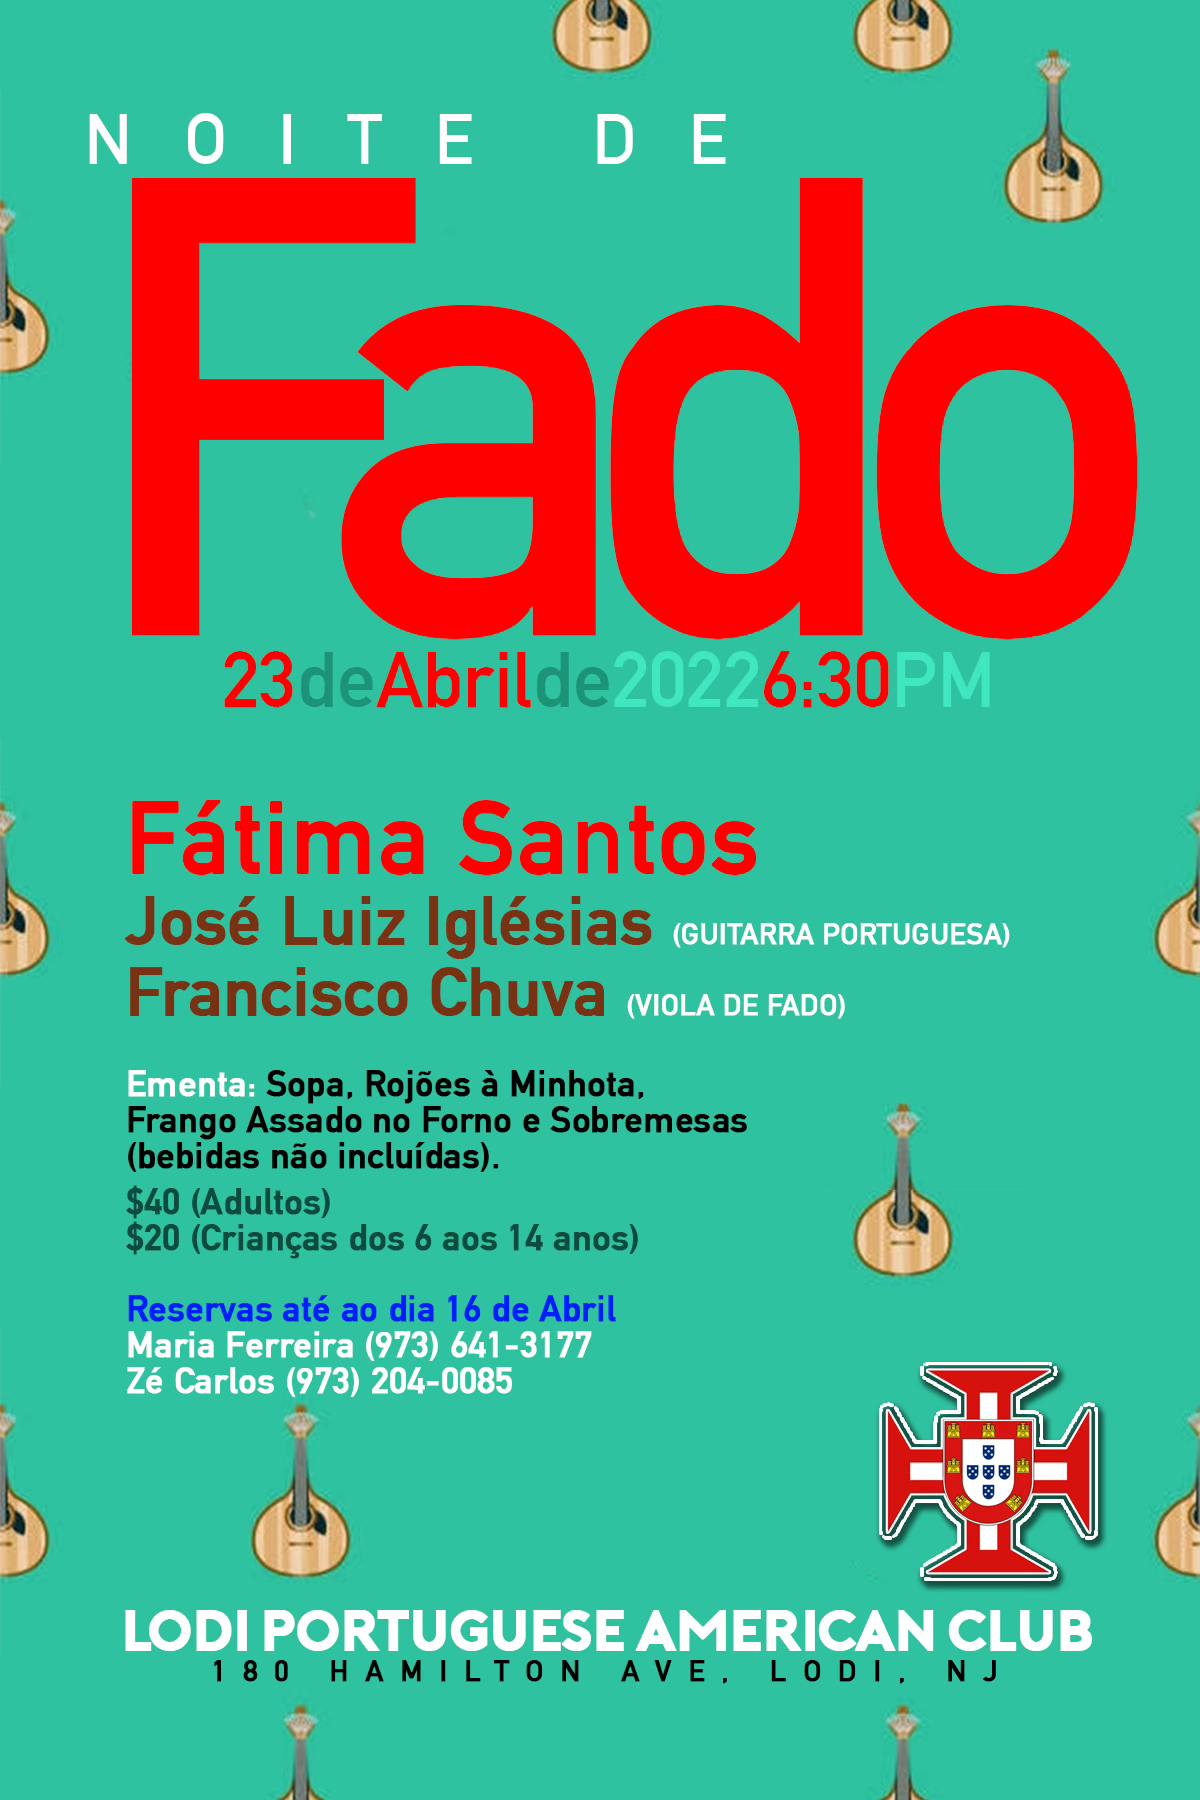 Fado Night Lodi Portuguese Club NJ